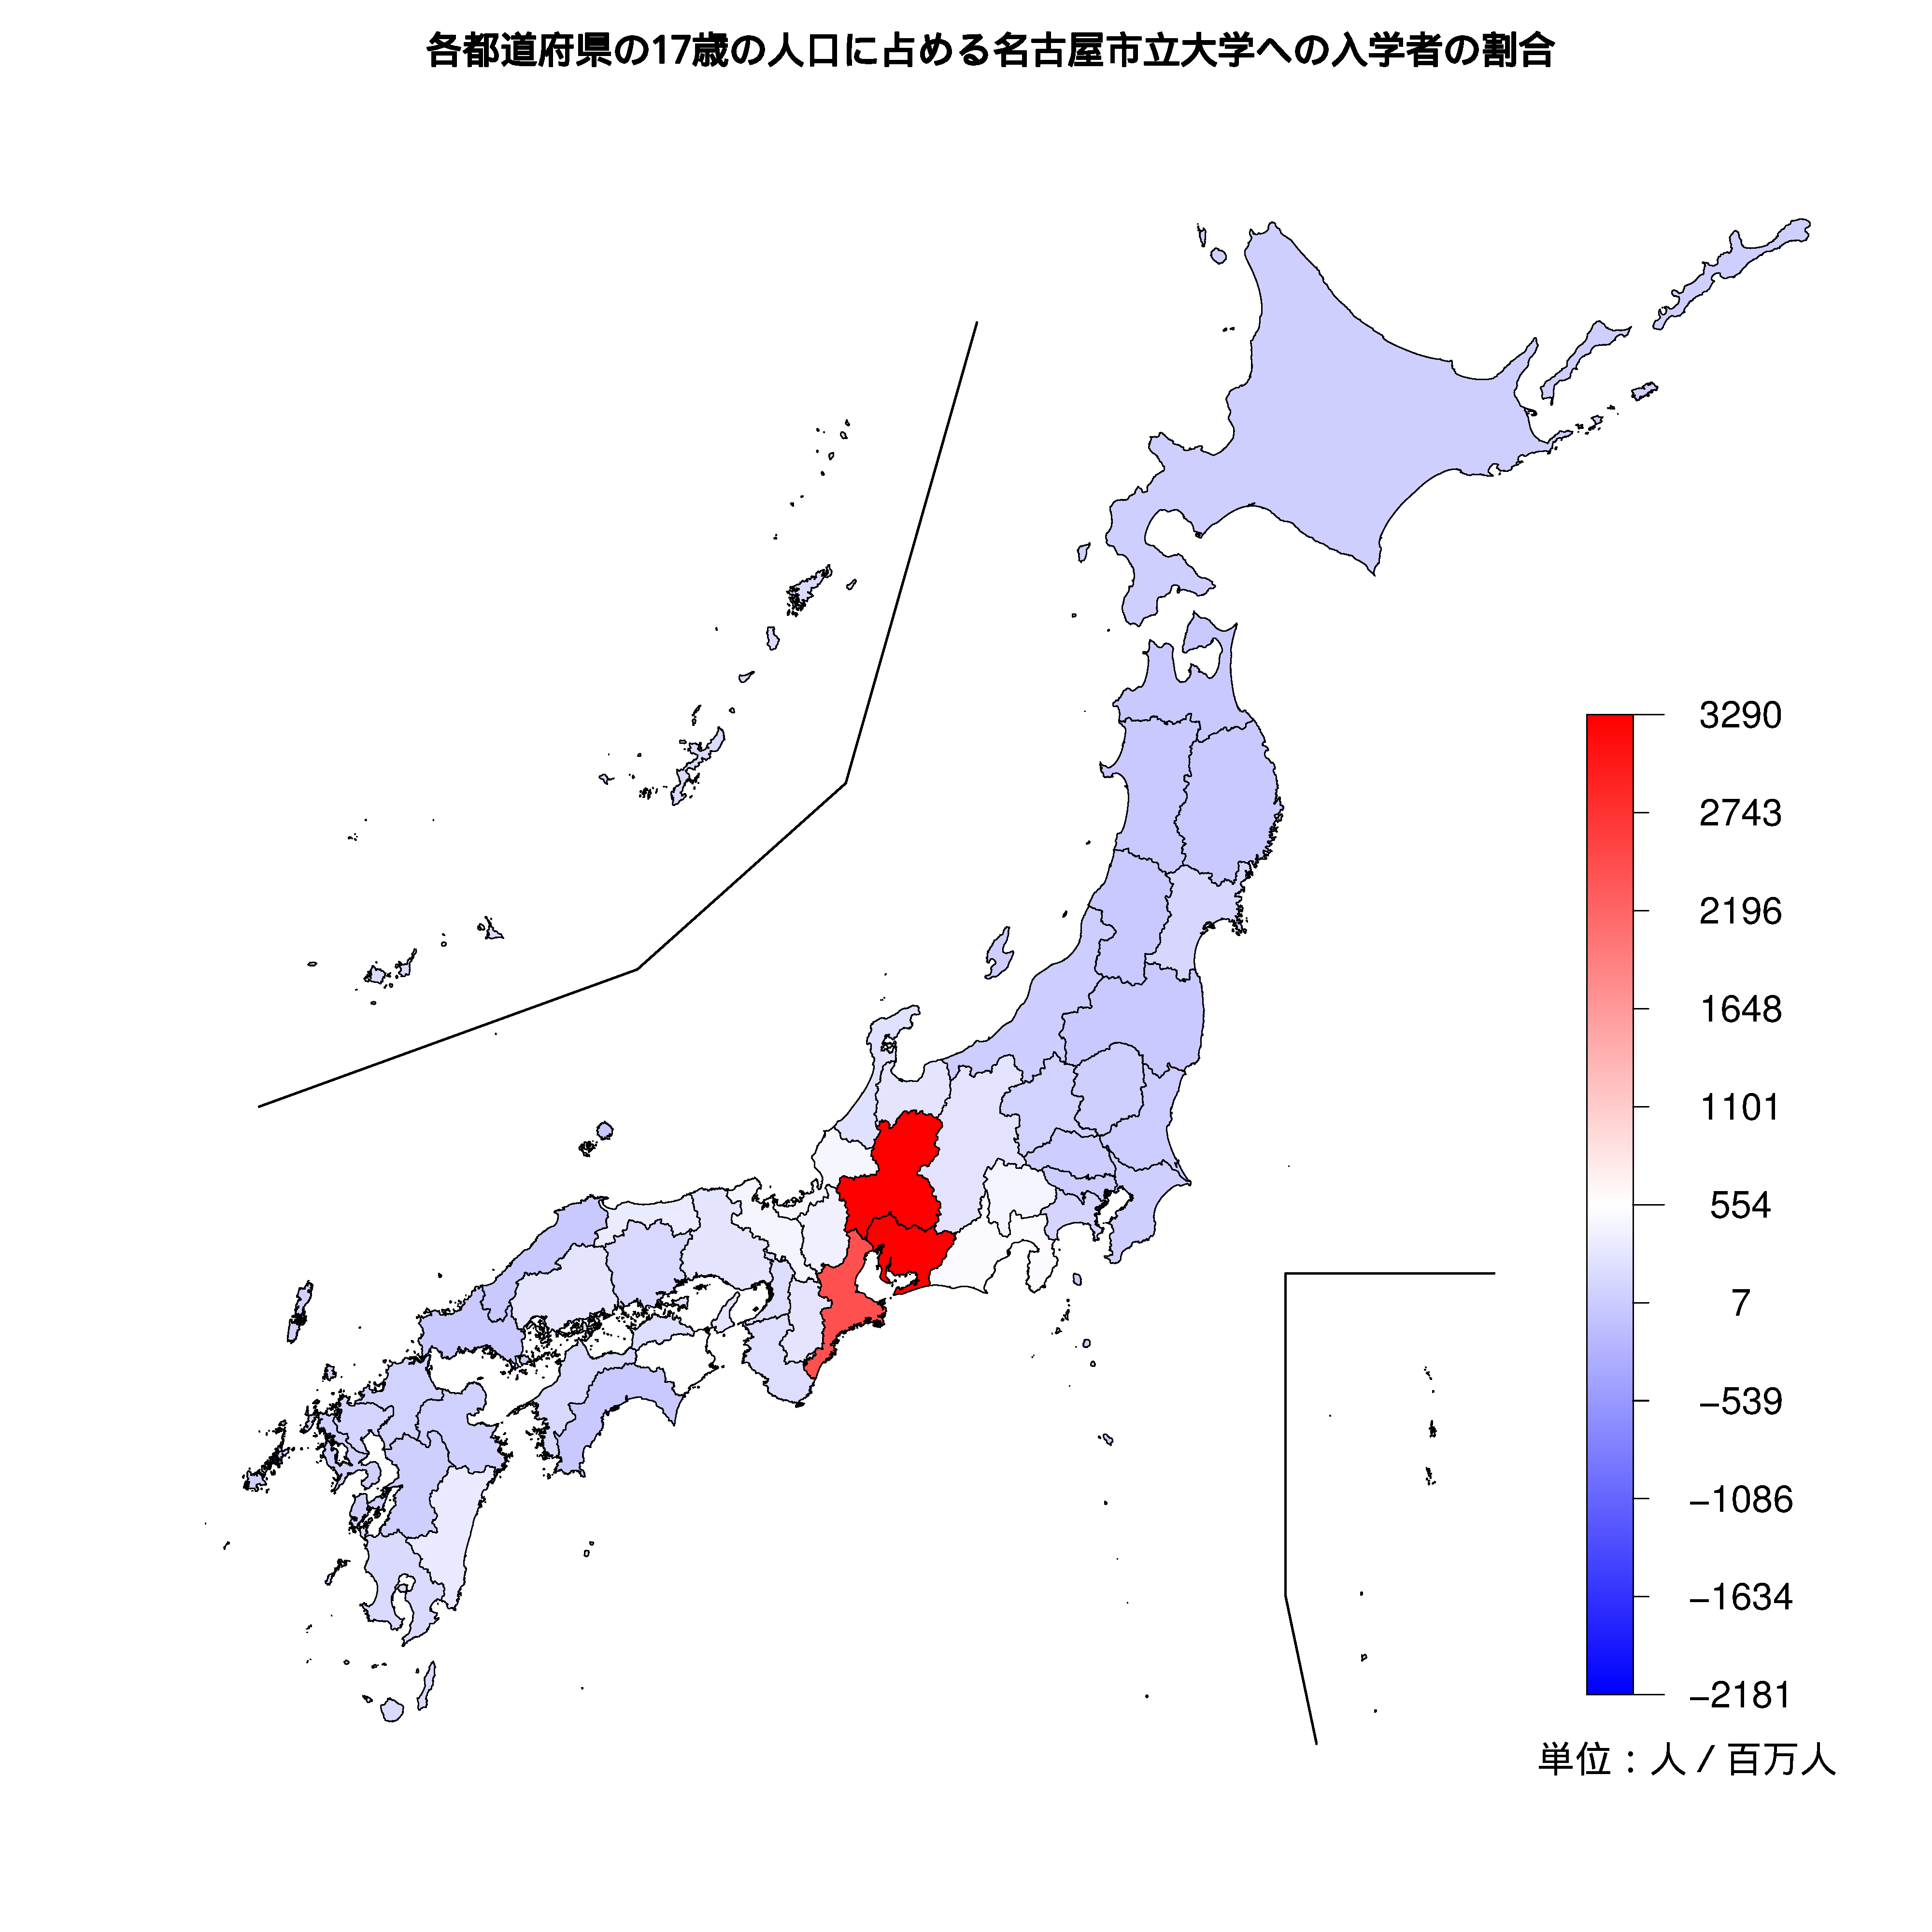 名古屋市立大学への入学者が多い都道府県の色分け地図